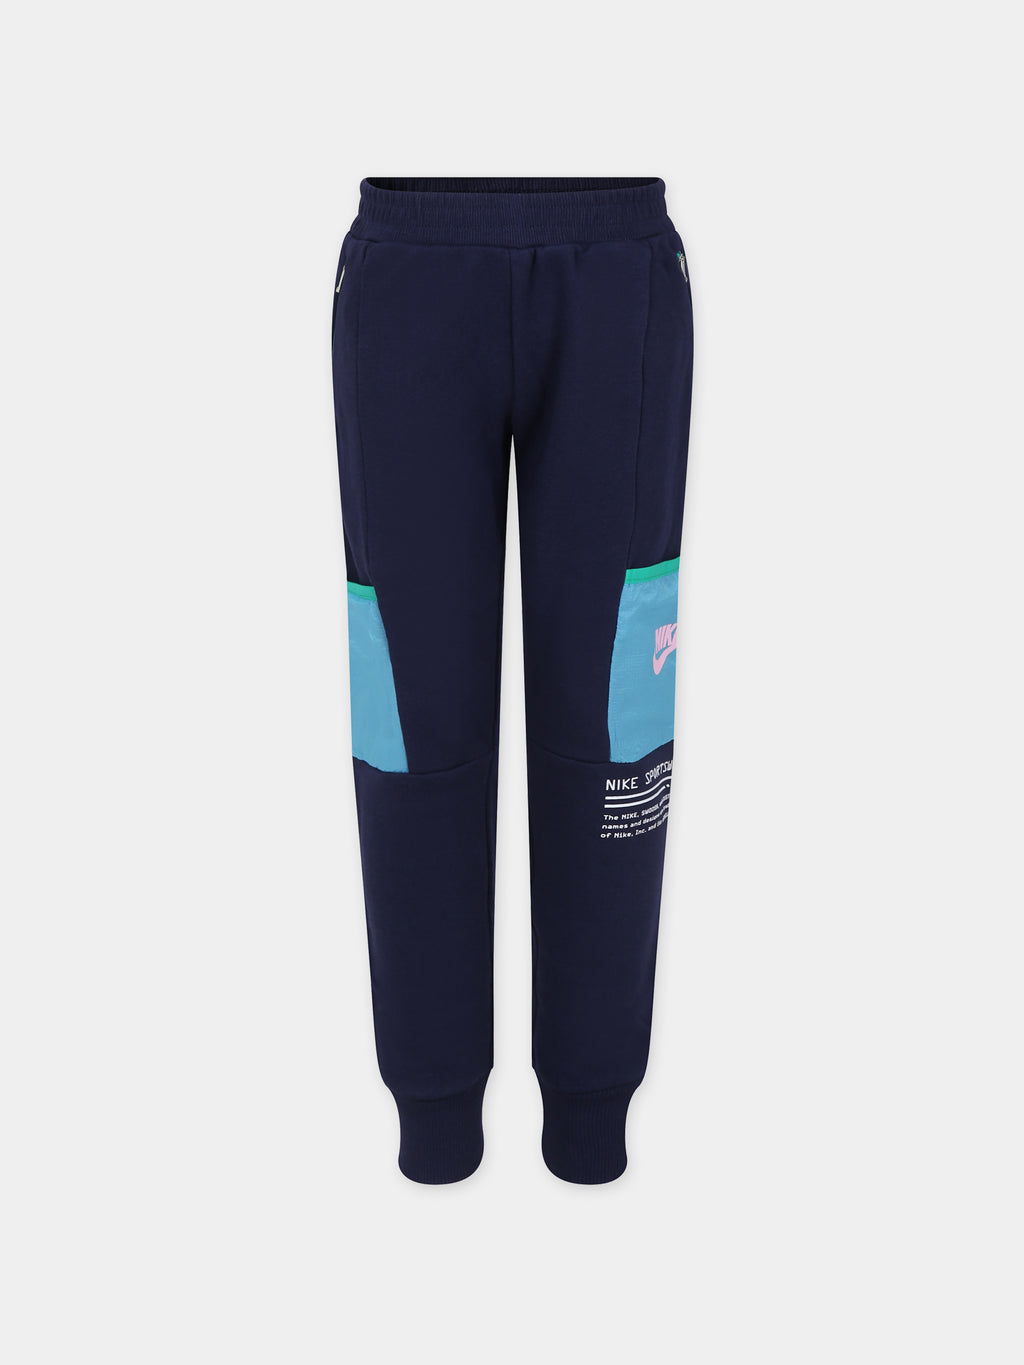 Pantalon bleu pour garçon avec logo et swoosh